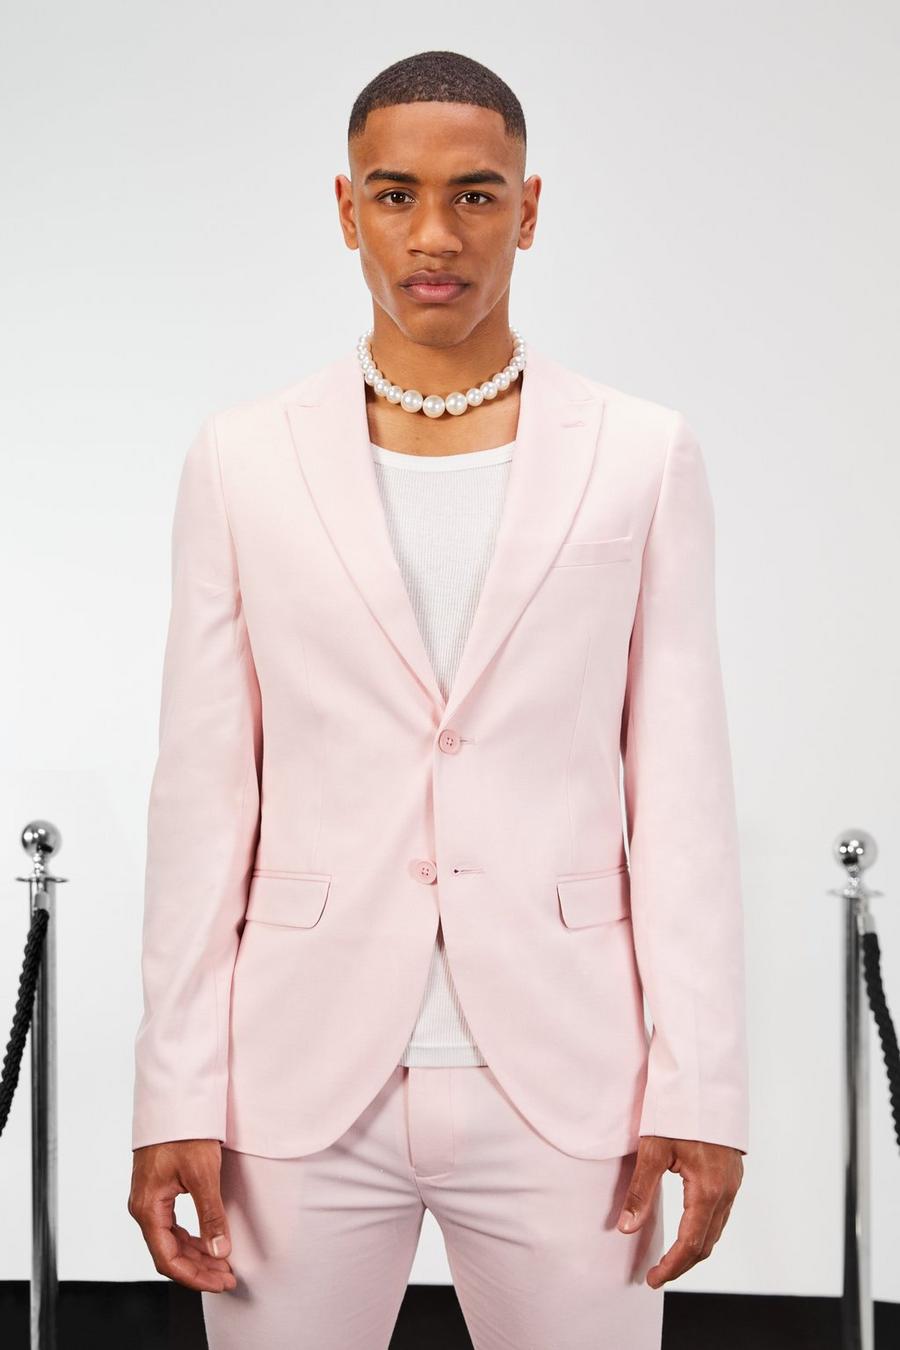 Einreihige Skinny Leinen-Anzugjacke, Light pink